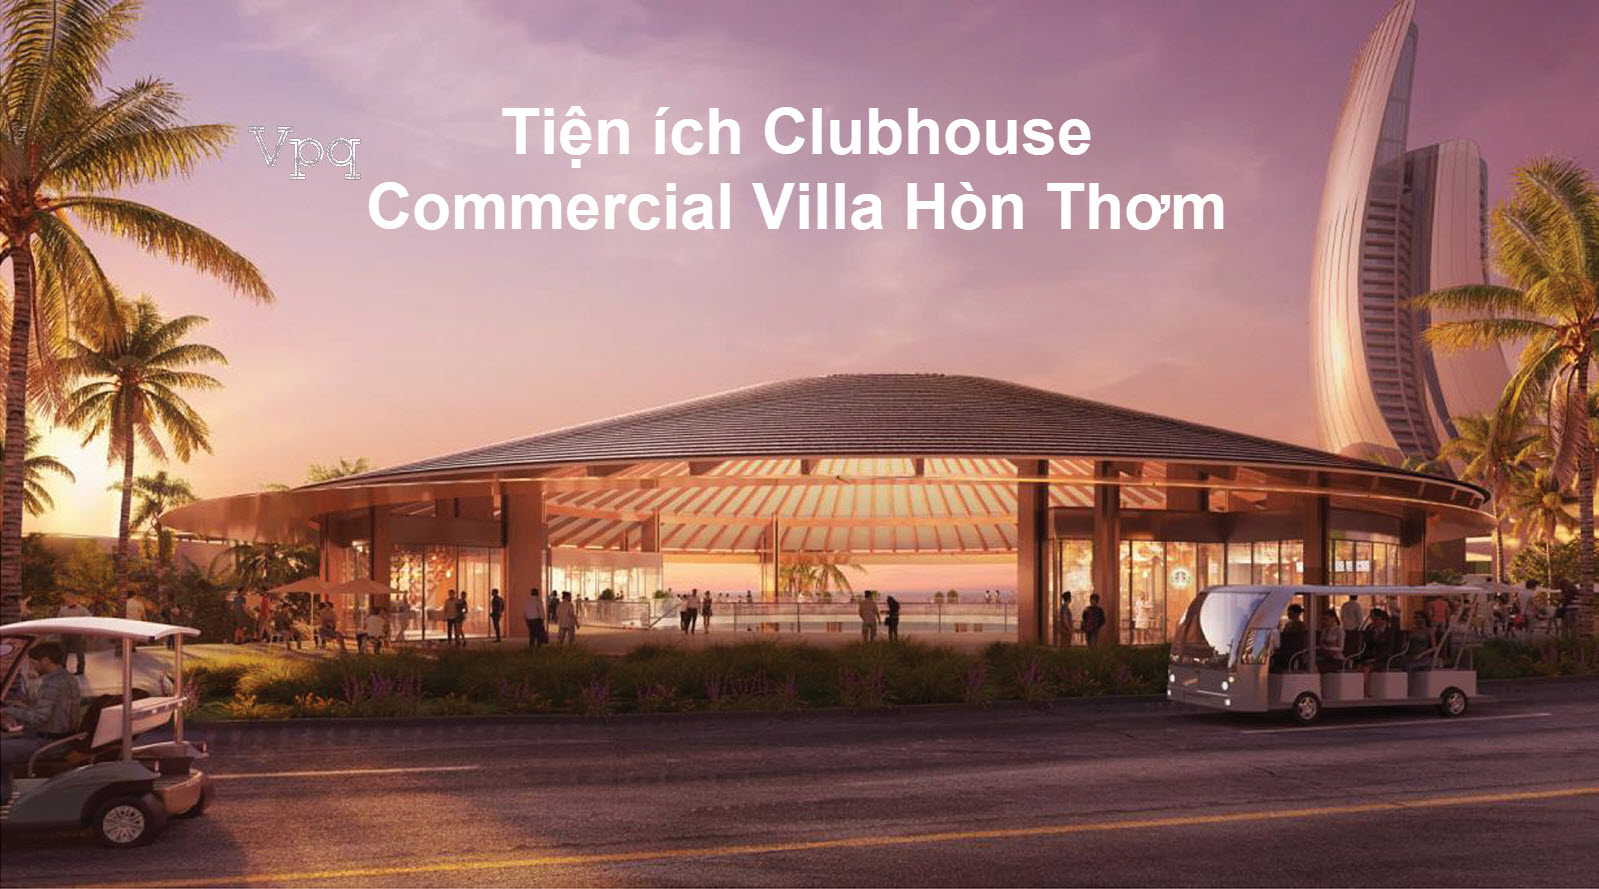 Tiện ích Clubhouse mang kiến trúc hình chiếc nón lá Việt Nam